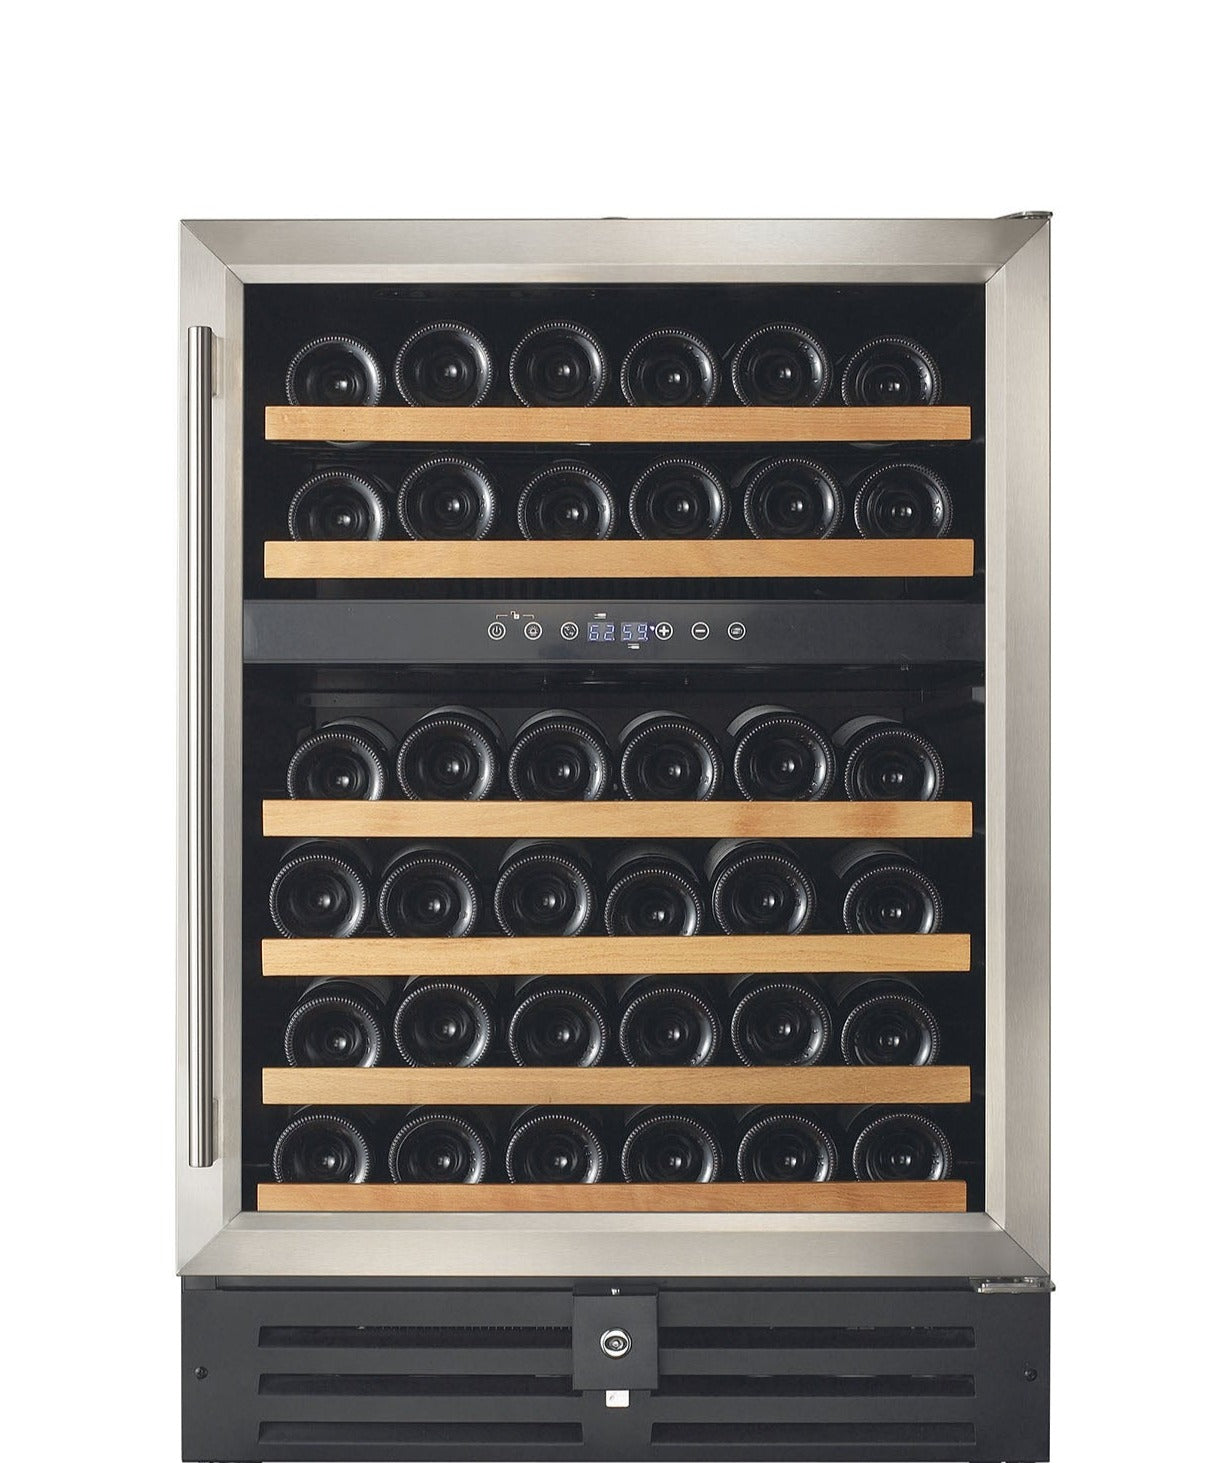 Smith & Hanks - 24" 46-Bottle Dual-Zone Stainless Steel Trim Glass Door Wine Cooler (RE100002)